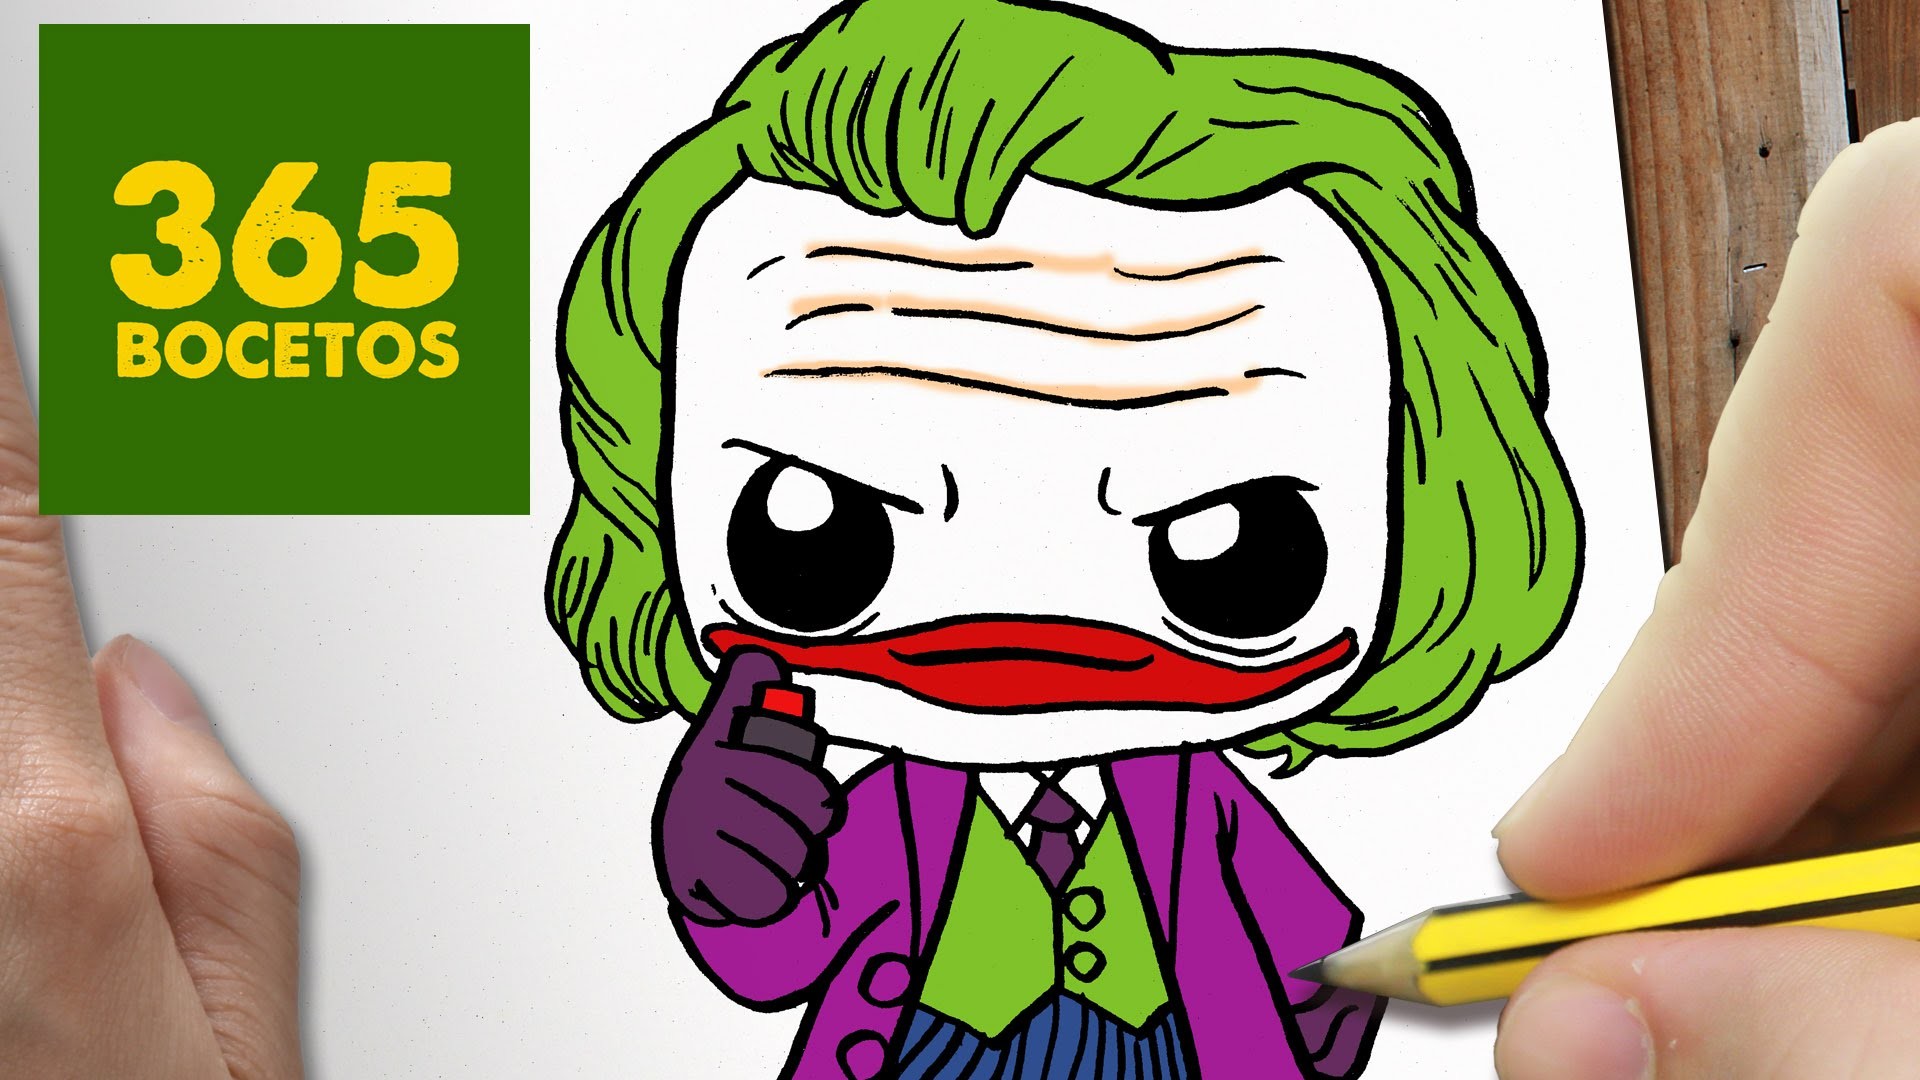 COMO DIBUJAR JOKER KAWAII PASO A PASO - Dibujos kawaii faciles - How to draw a Joker